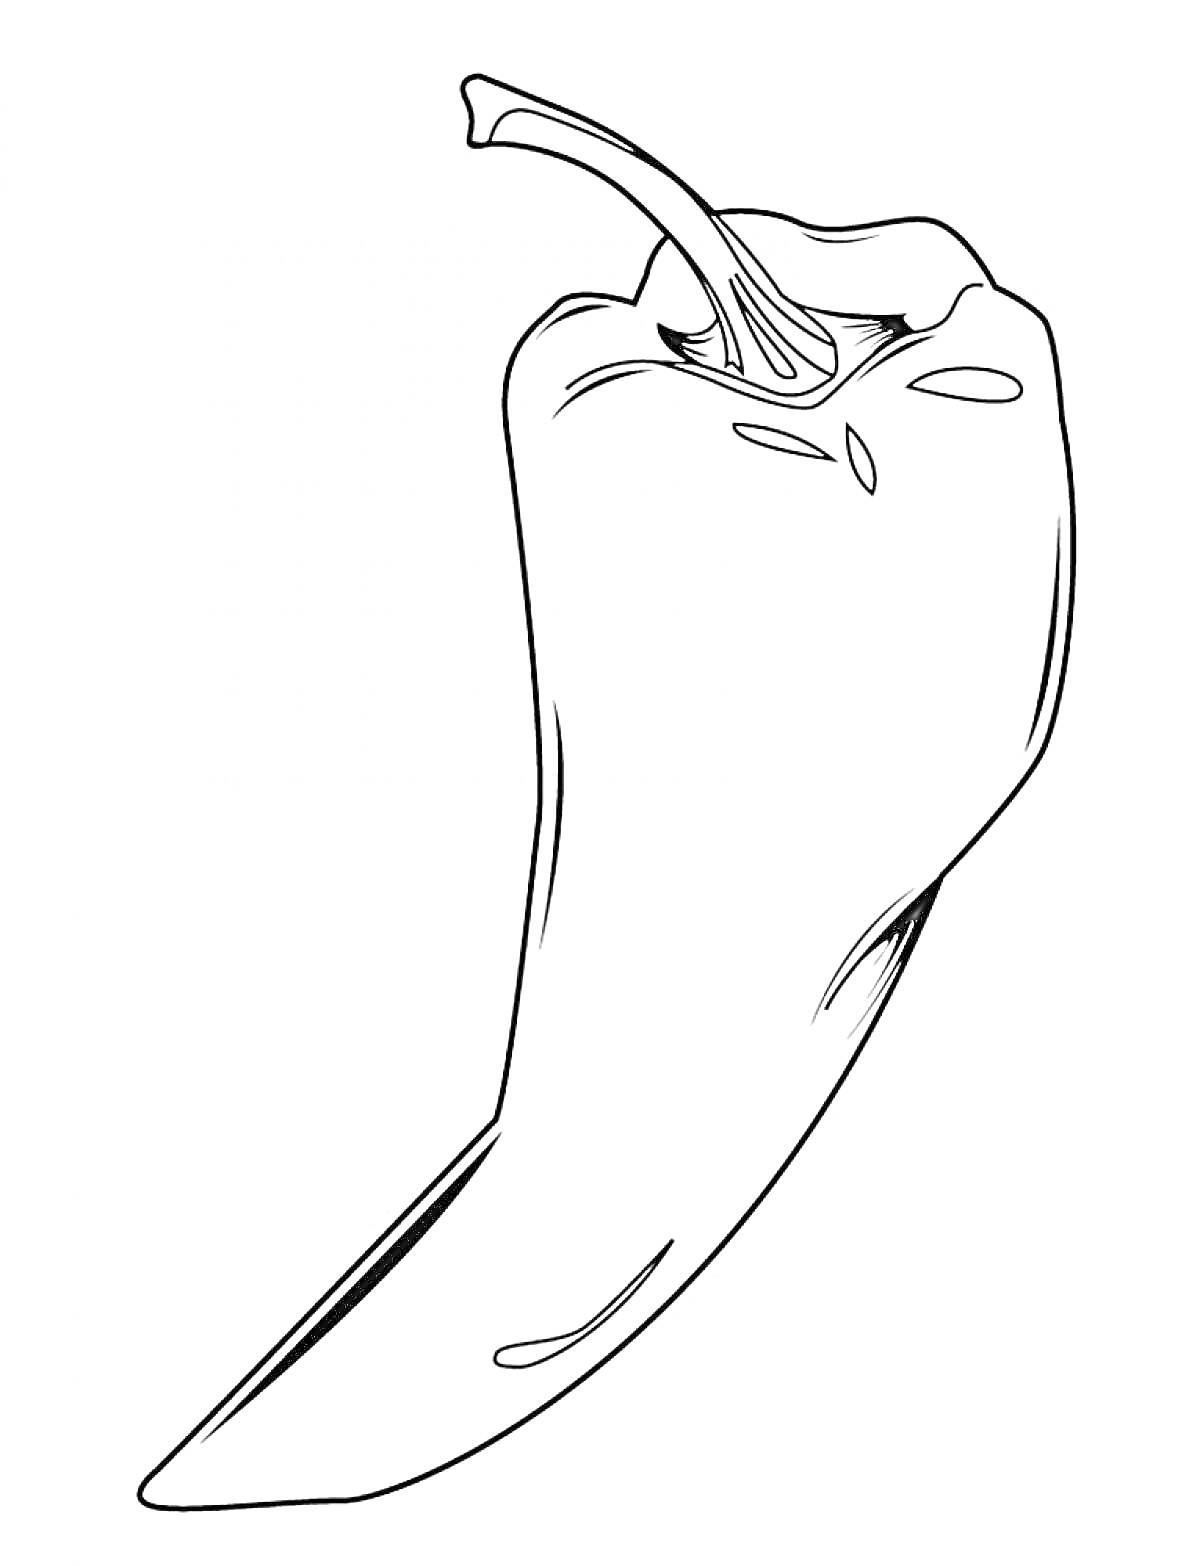 Раскраска с изображением одного стручкового перца